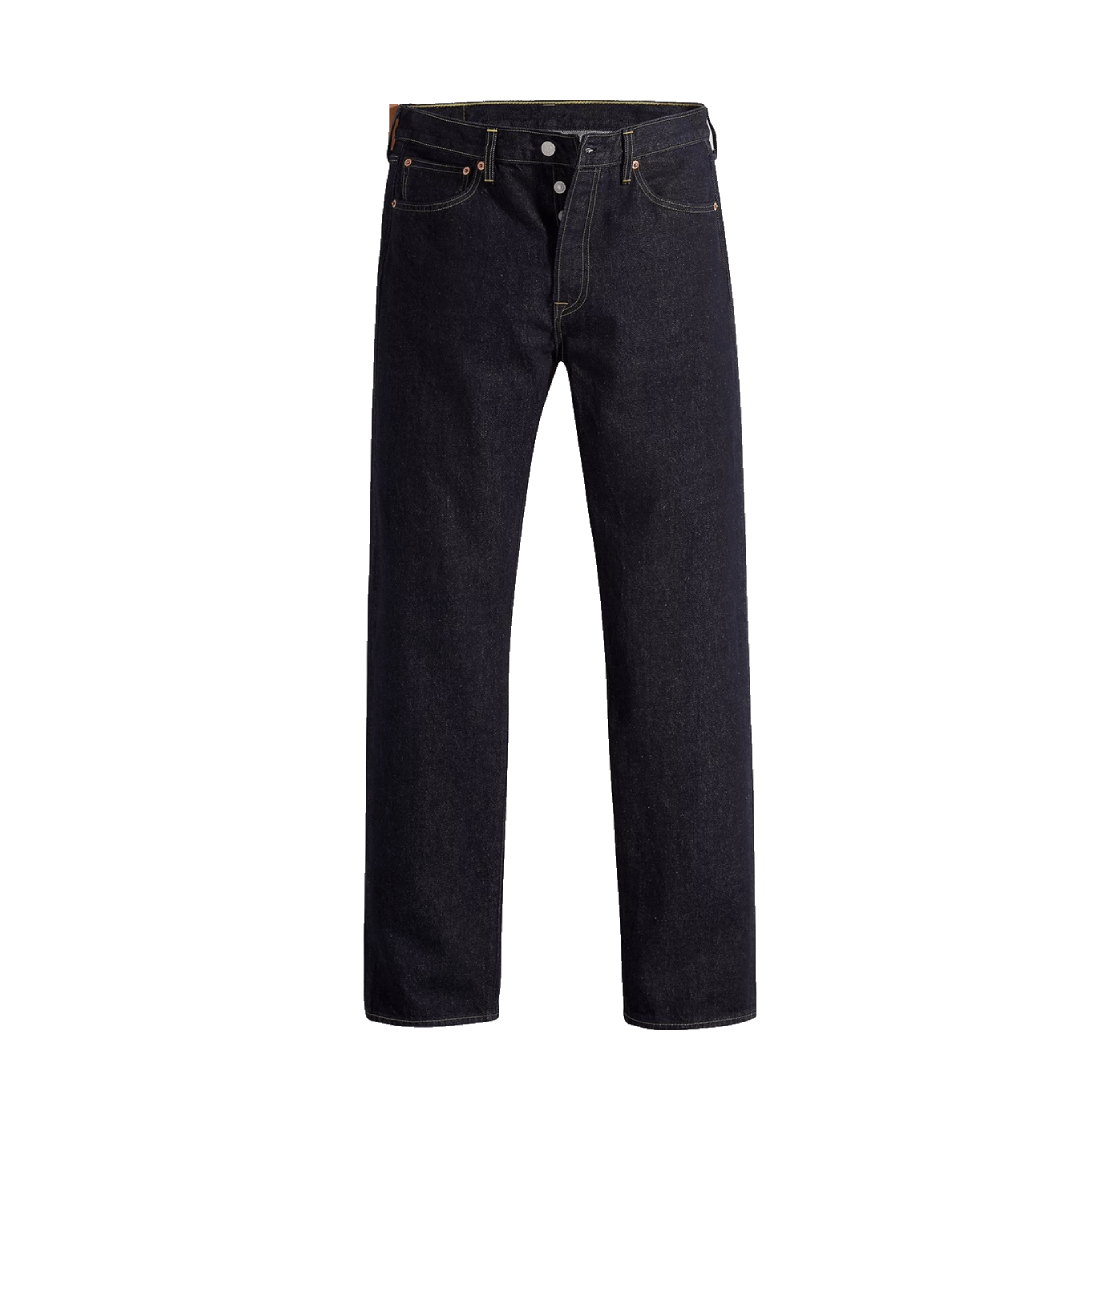 Quần jeans Levi's 501-3408